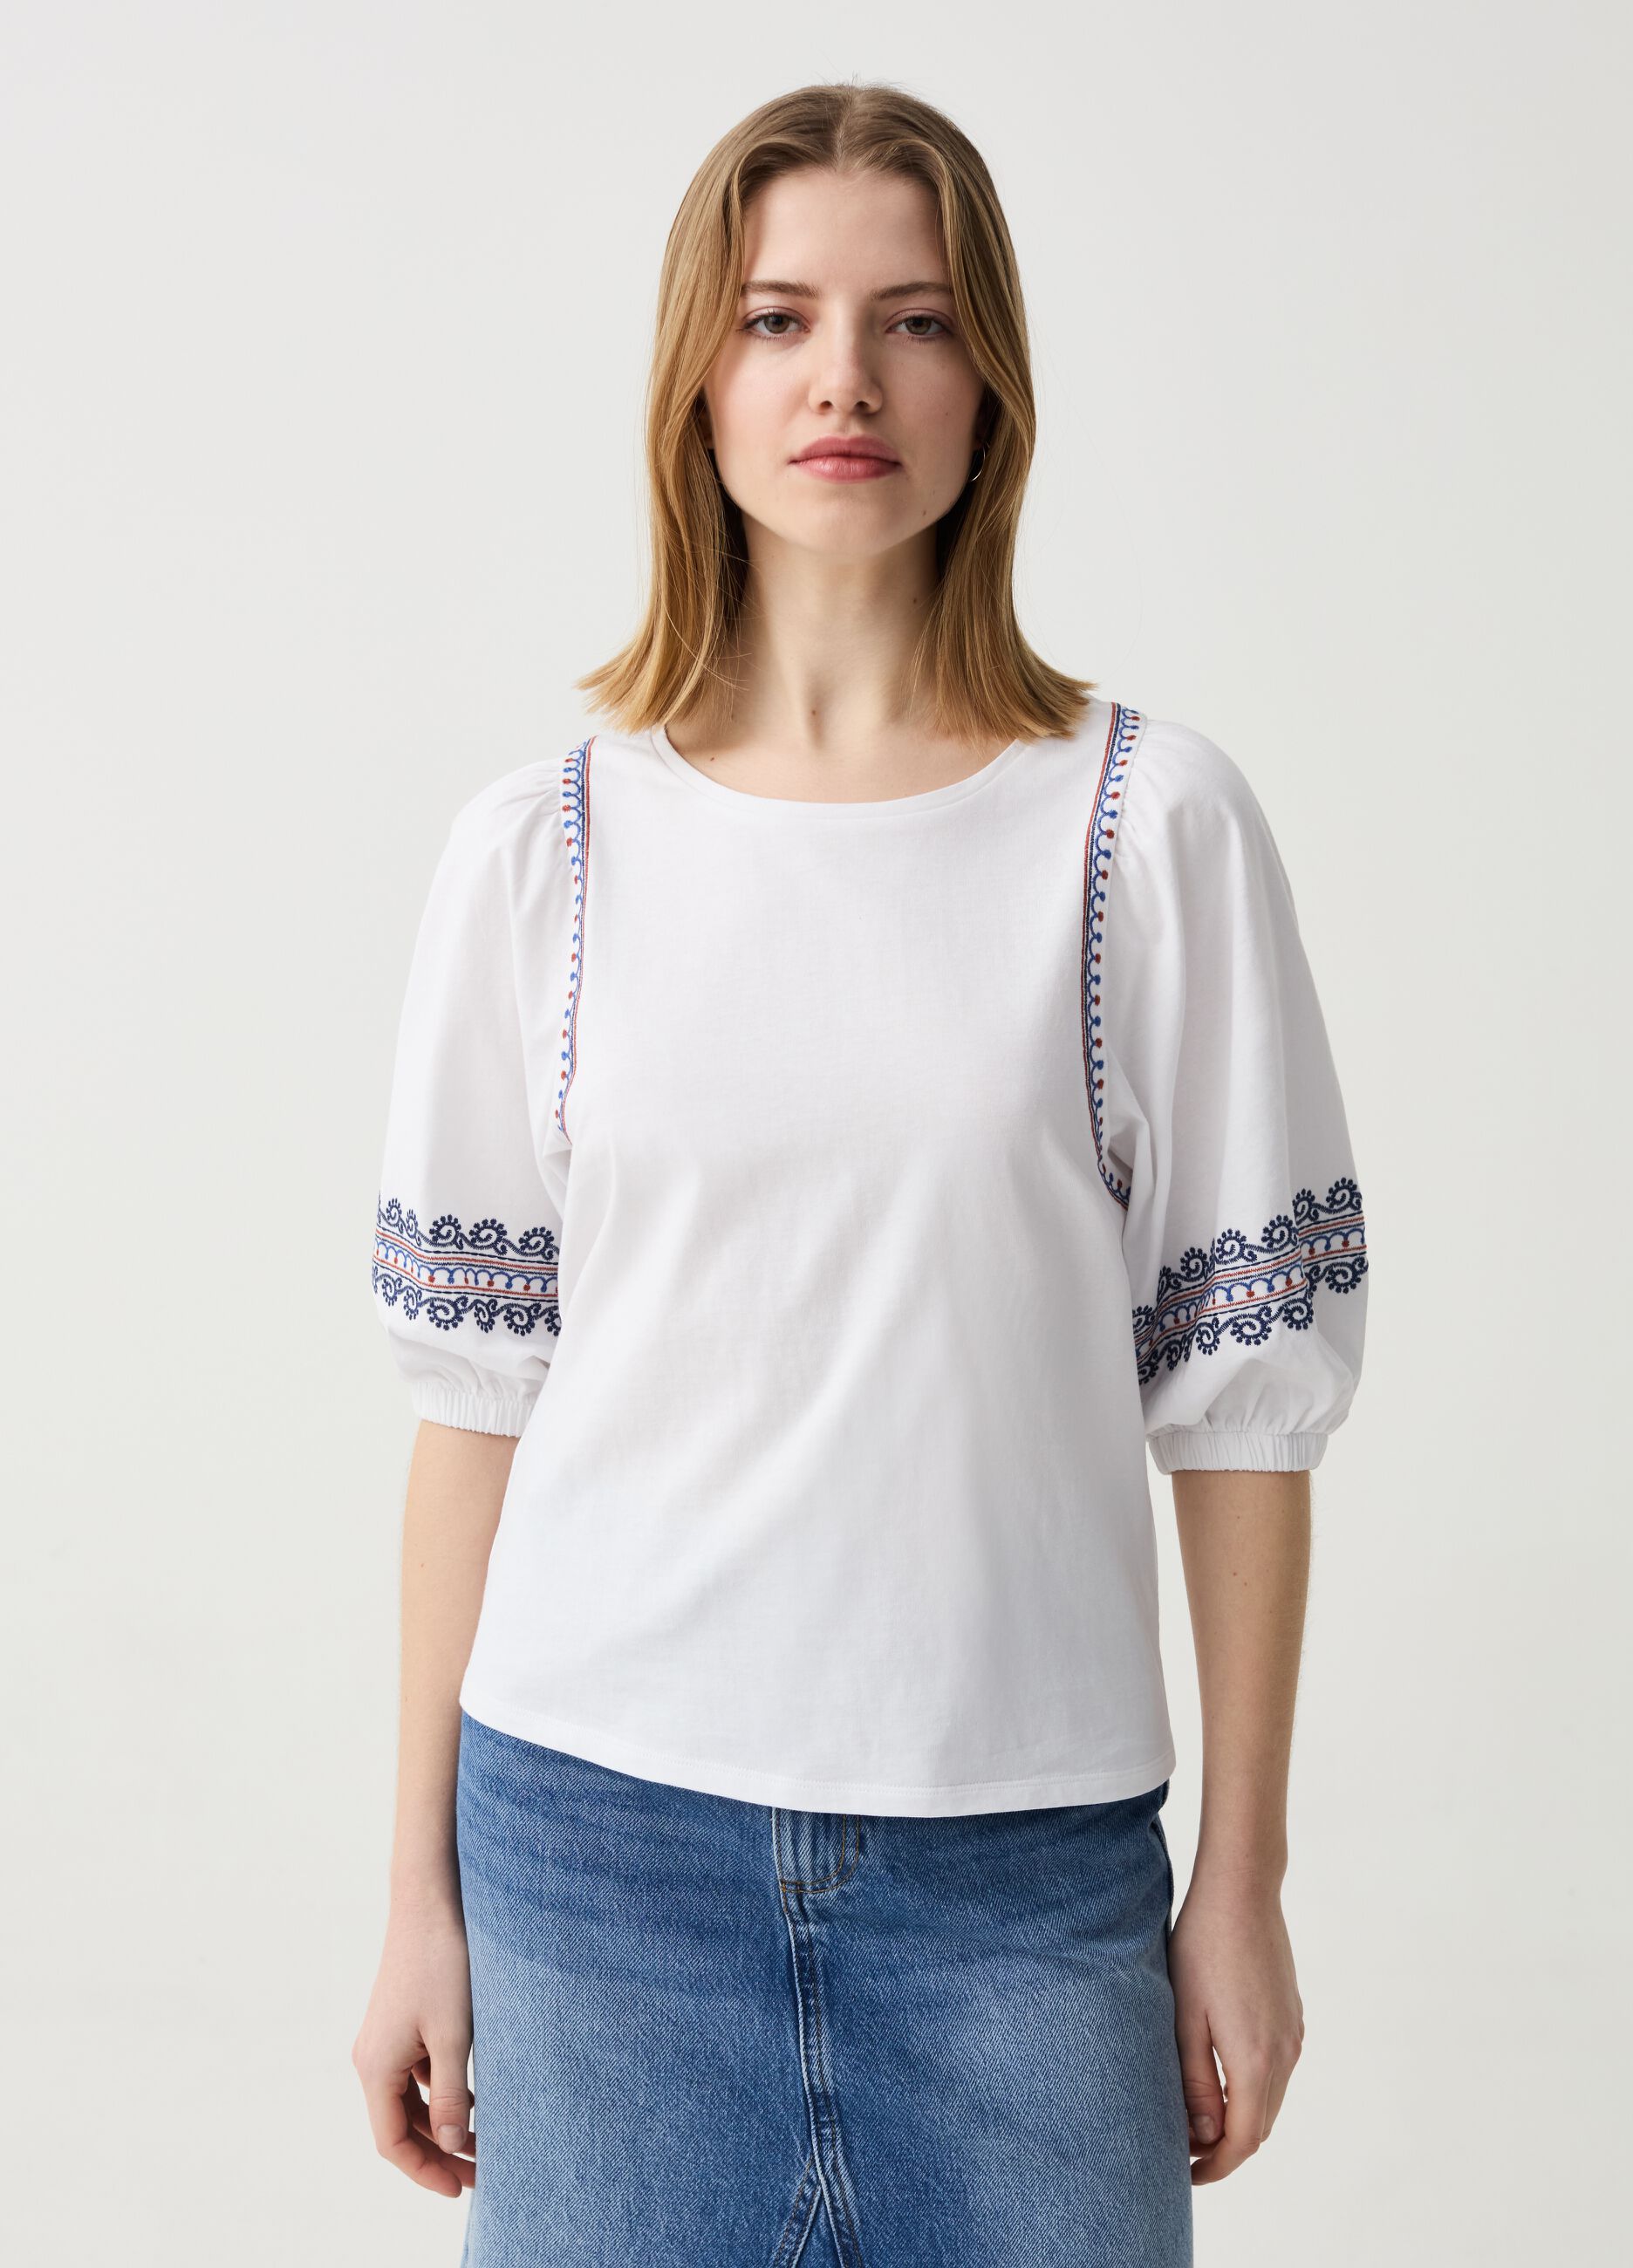 Camiseta boho de algodón con bordados